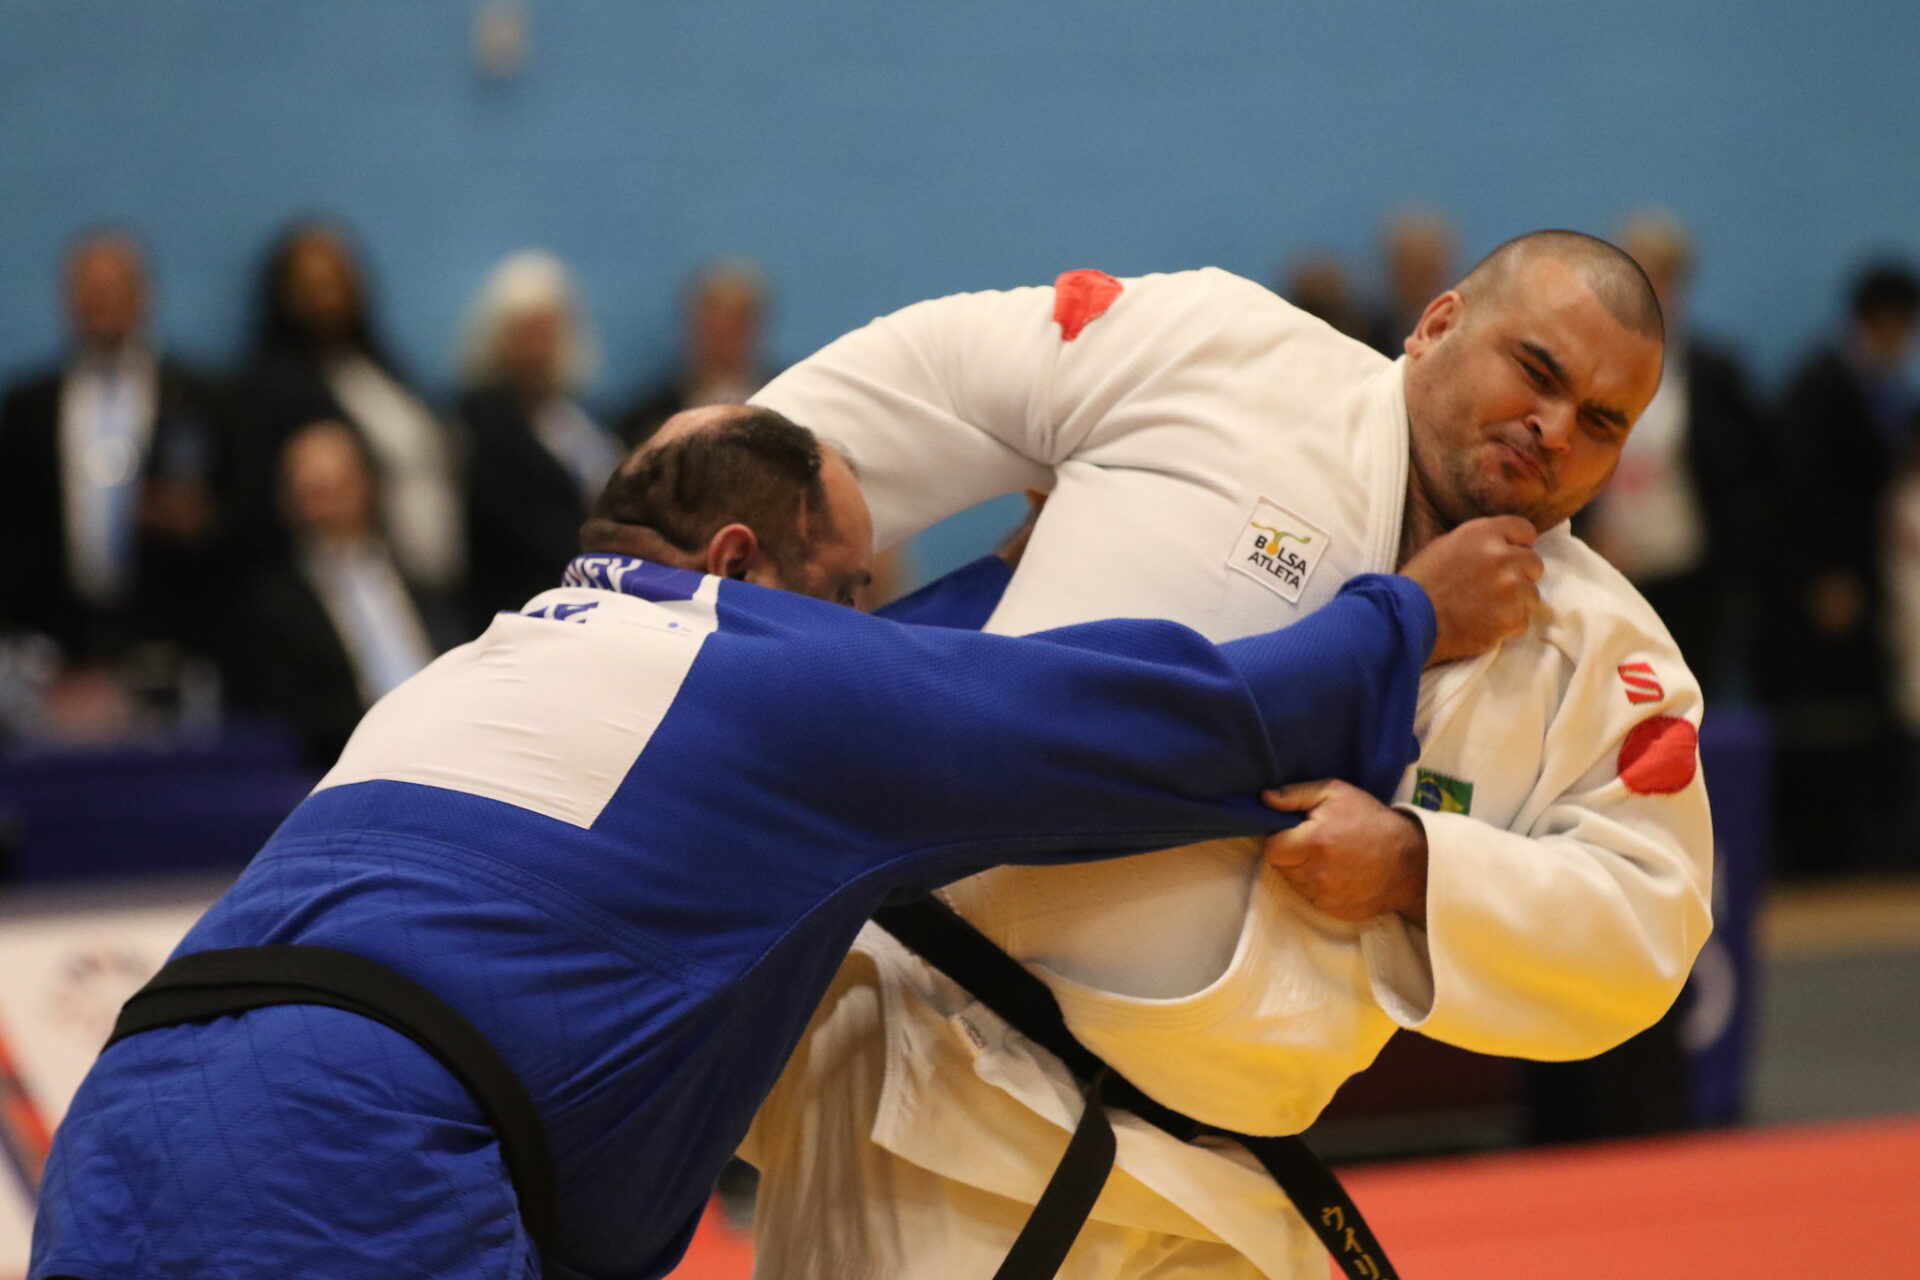 Le judoka paraiba Wilians Araújo remporte l’or et le Brésil monte sept fois sur le podium à la Coupe du monde IBSA